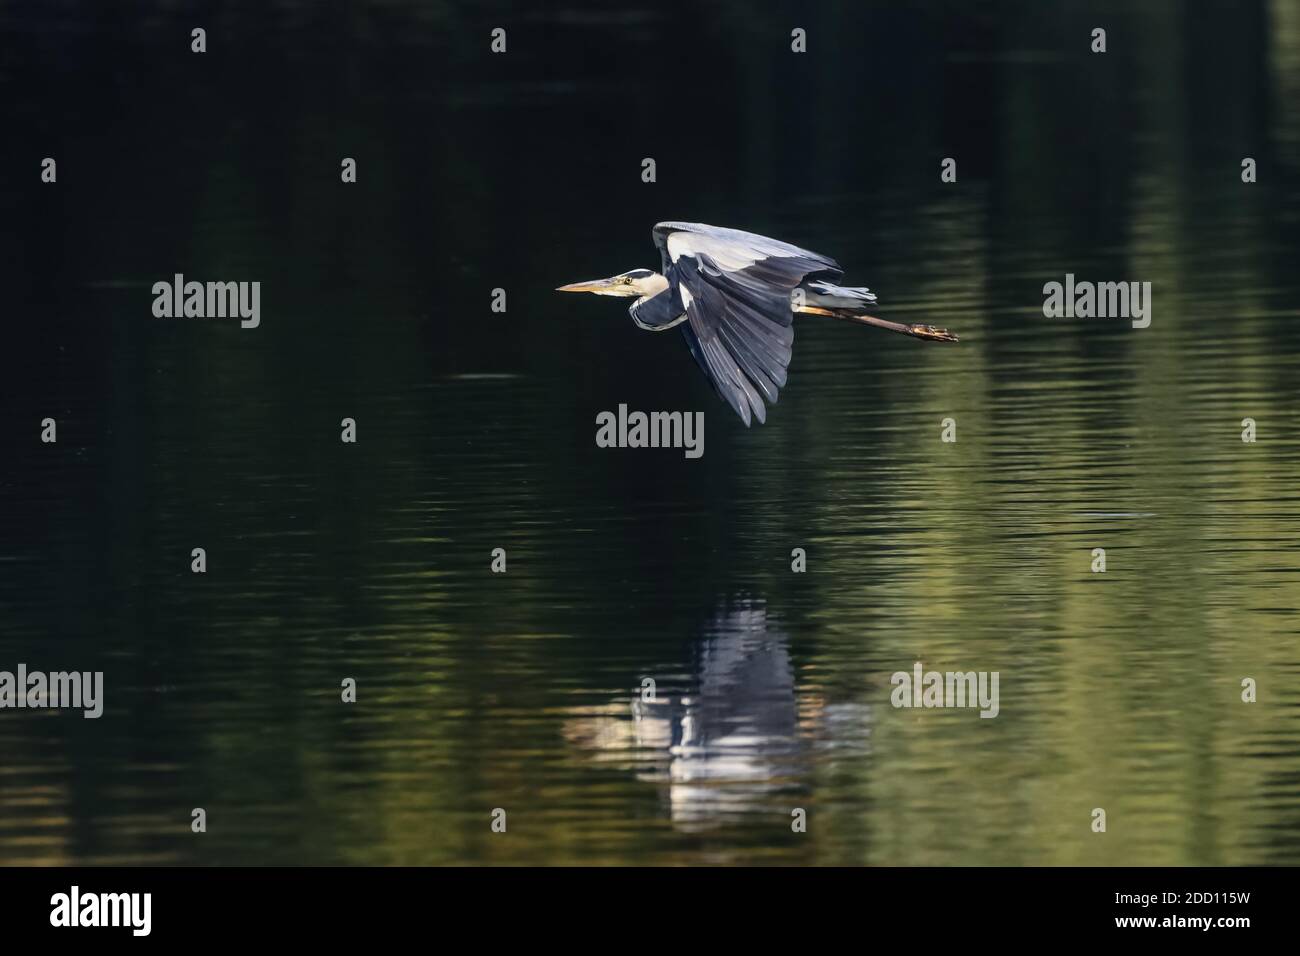 Airone grigio in volo su un lago di Ostholstein. Gli alberi ancora verdi si riflettono nell'acqua e formano un bel contrasto con l'uccello. Foto Stock